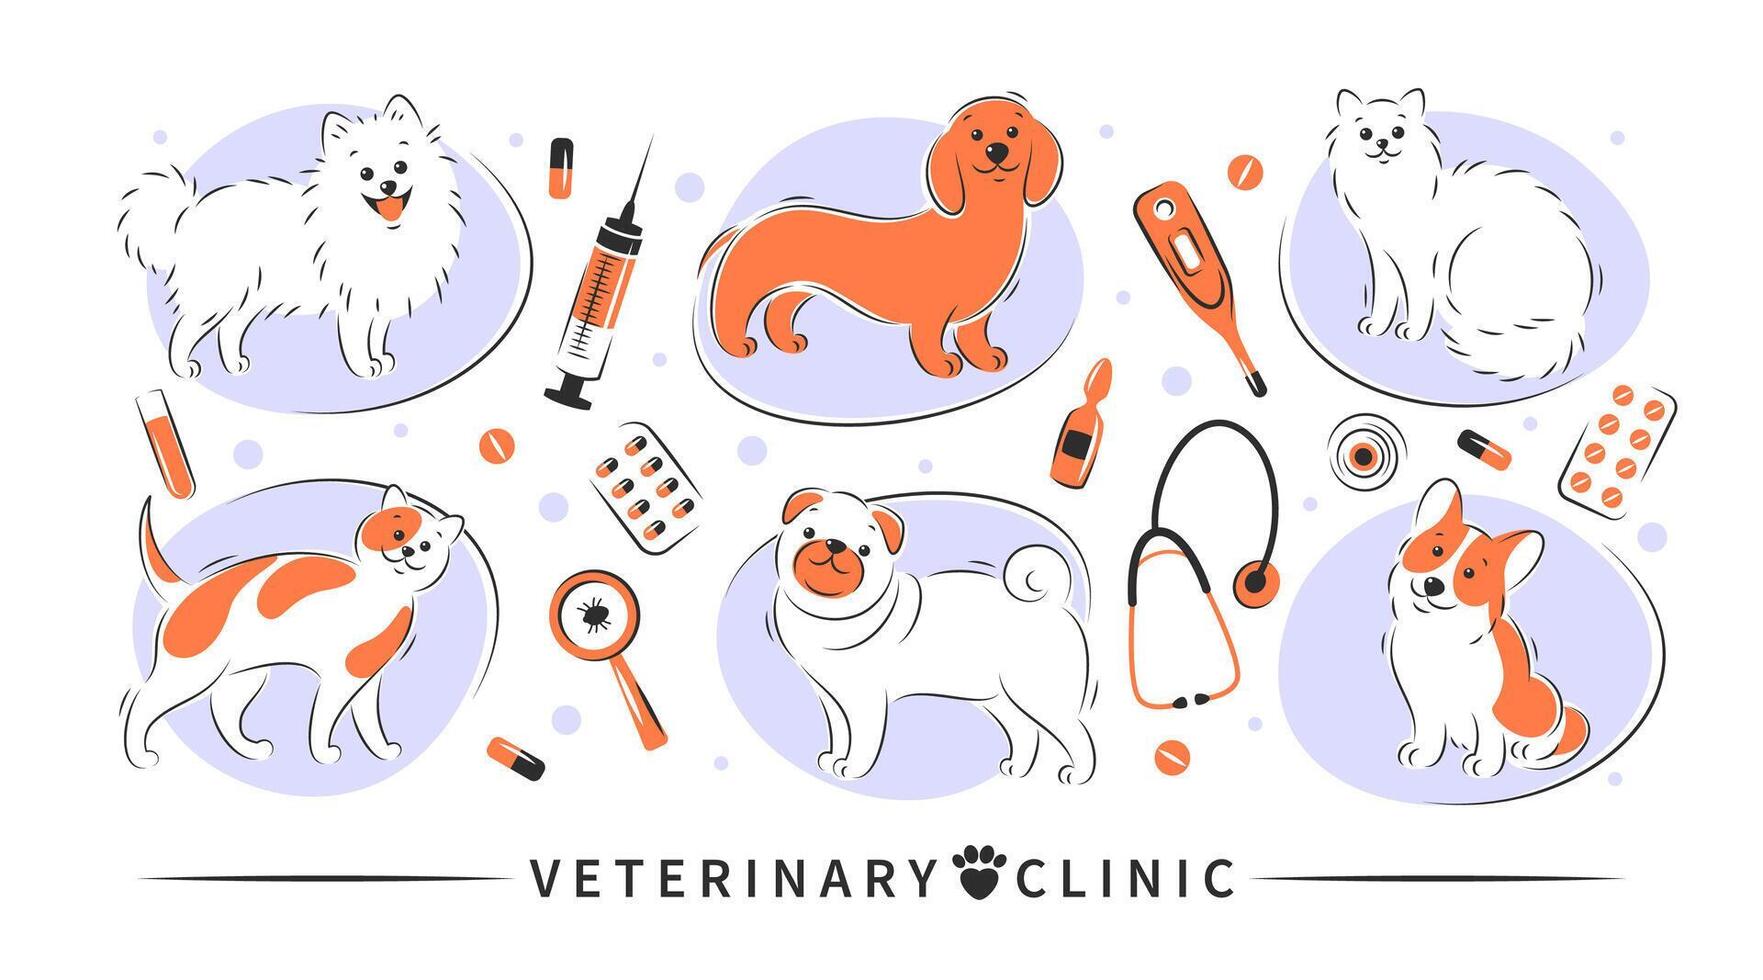 veterinär klinik. uppsättning av verktyg för veterinär sjukhus. djur- vaccination, mediciner, medicinsk undersökning, hälsa kontrollera, behandling. vektor illustration